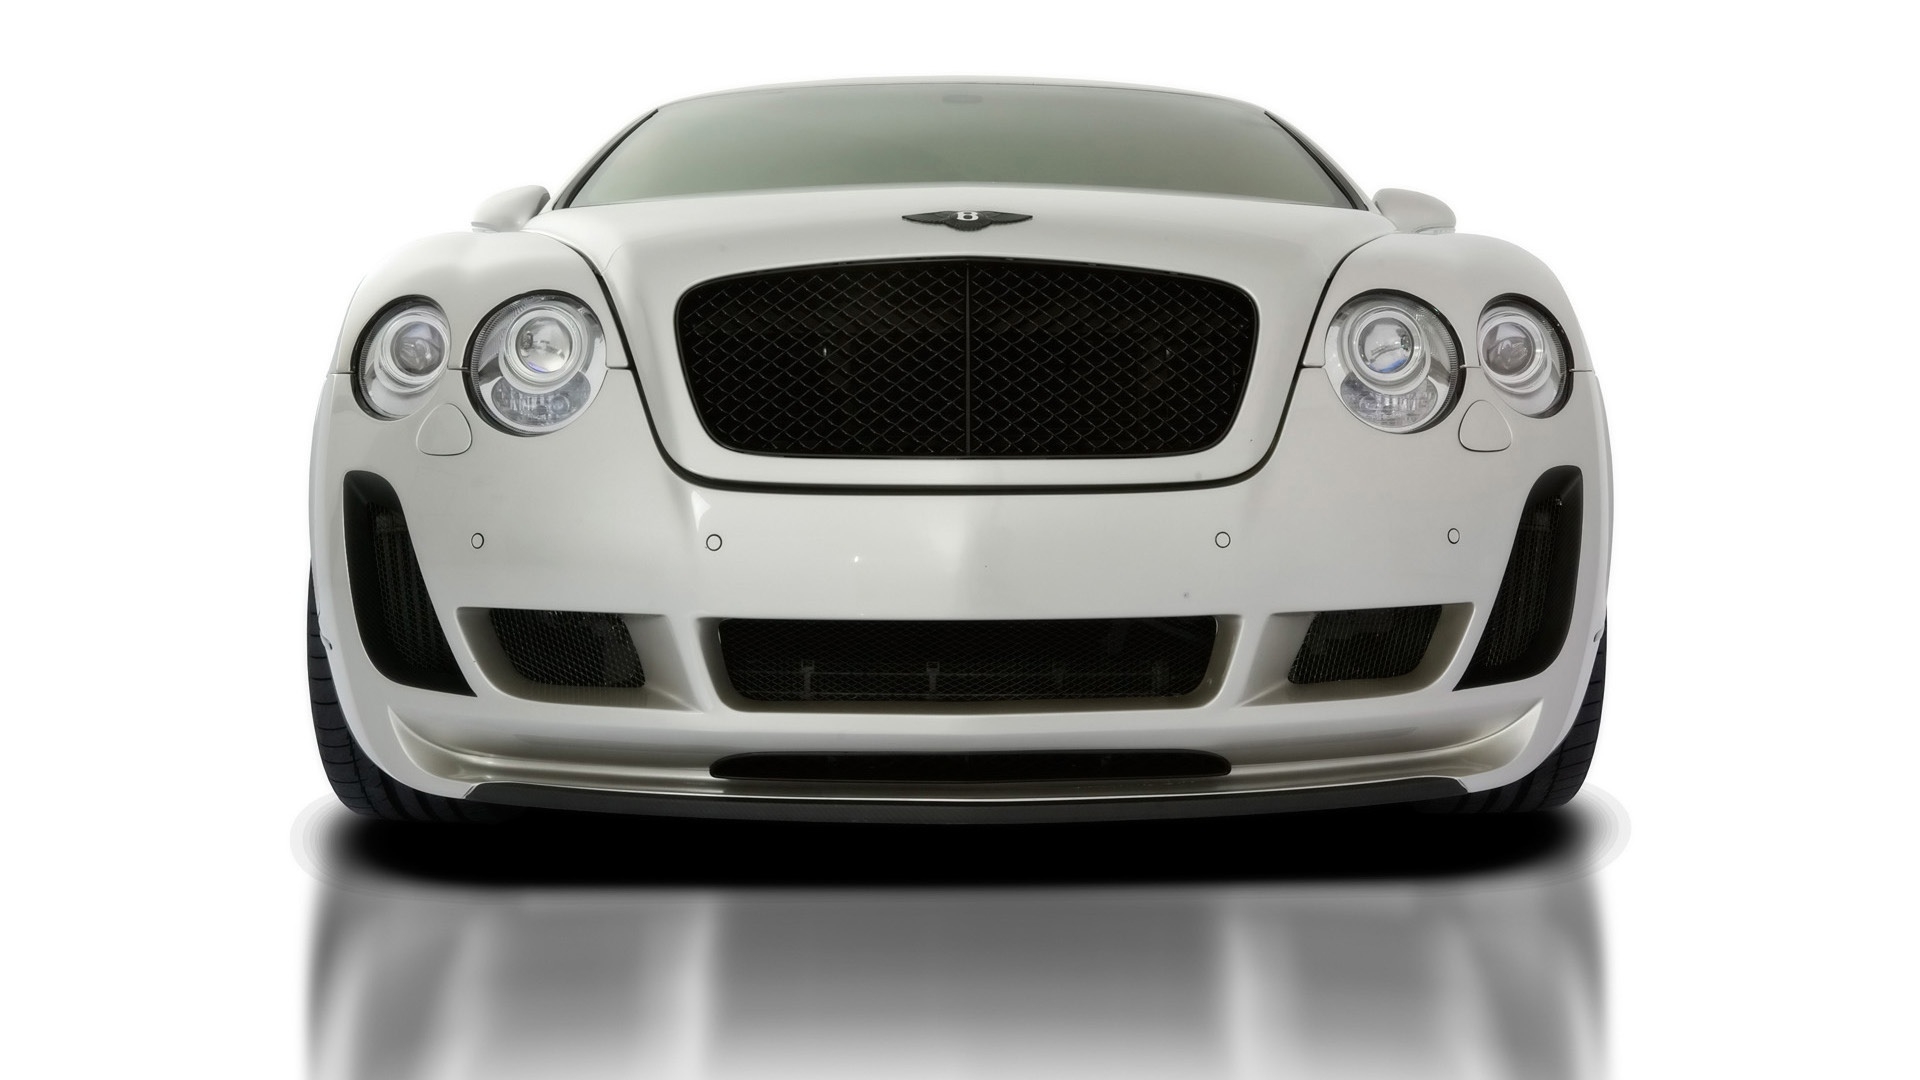 2010 Vorsteiner Bentley Continental GT BR9 Edition for 1920 x 1080 HDTV 1080p resolution